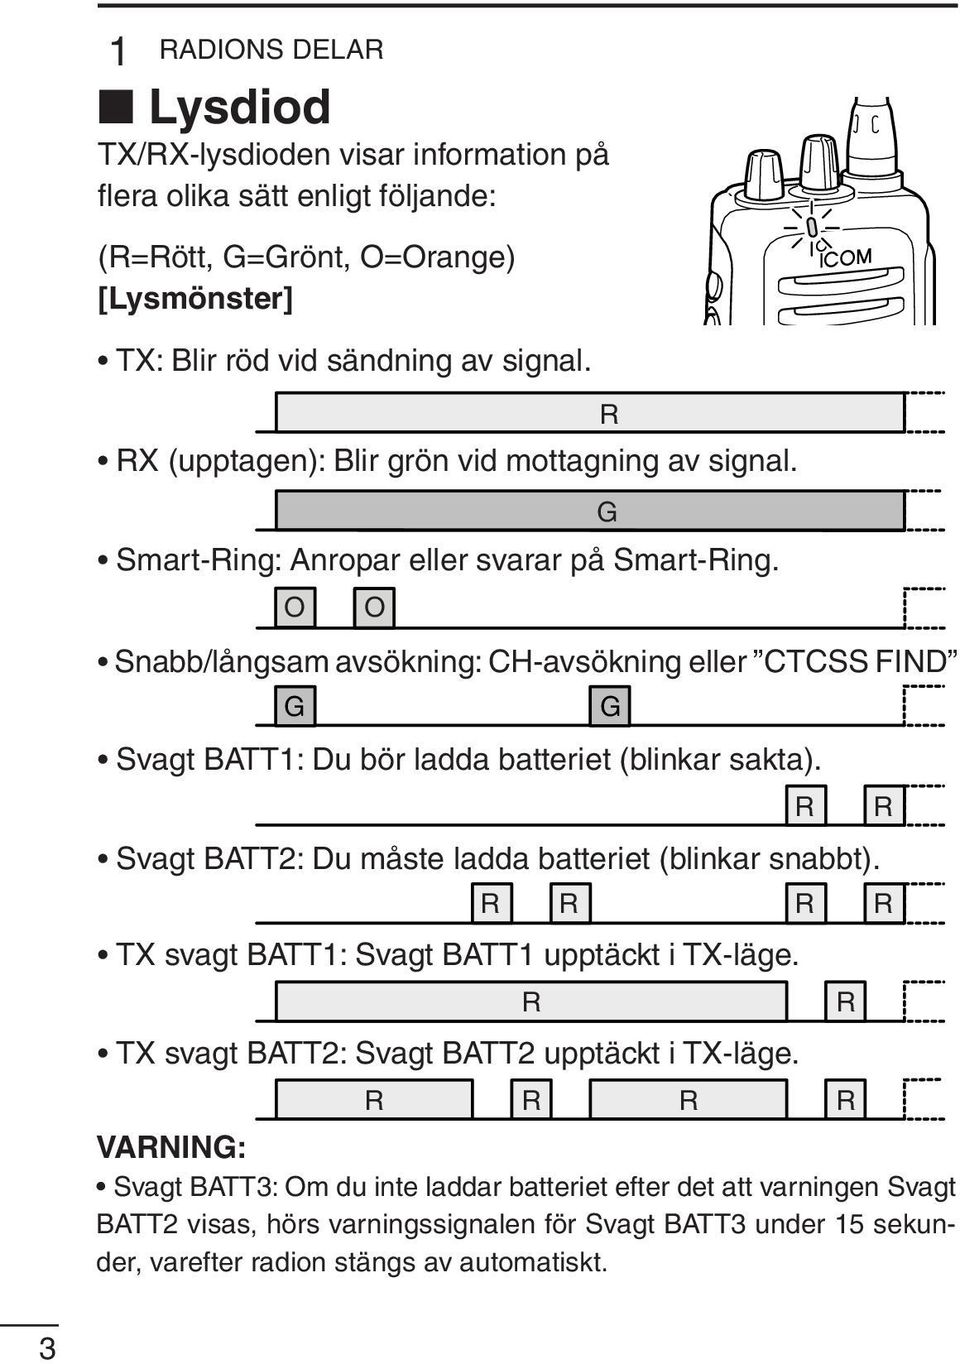 O O Snabb/långsam avsökning: CH-avsökning eller CTCSS FIND /långsam ing G G Svagt BATT1: Du bör ladda batteriet (blinkar sakta). Svagt BATT2: Du måste ladda batteriet (blinkar snabbt).